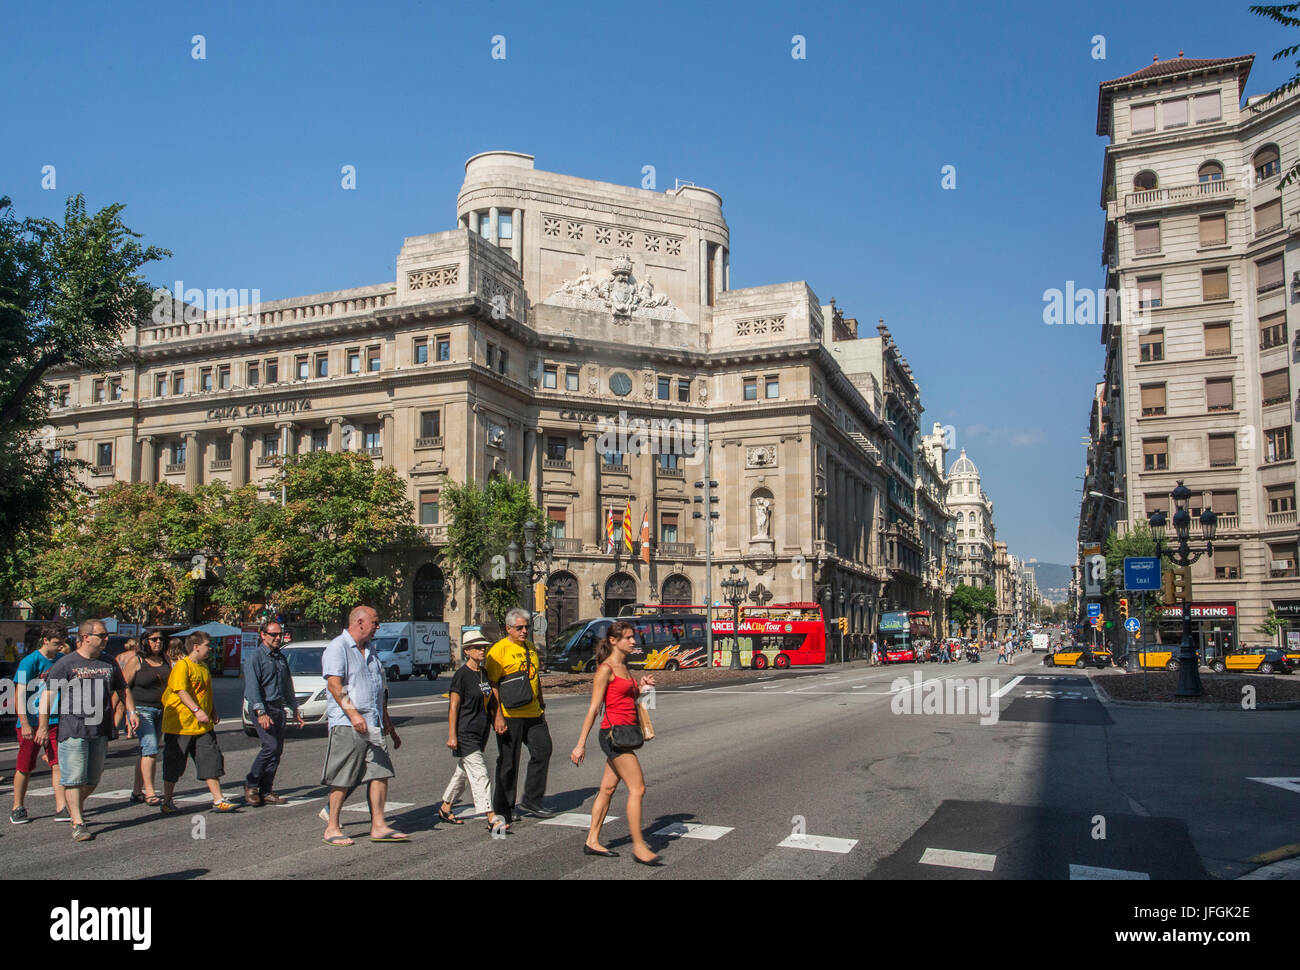 Spain, Barcelona City, Via Laietana Avenue Stock Photo